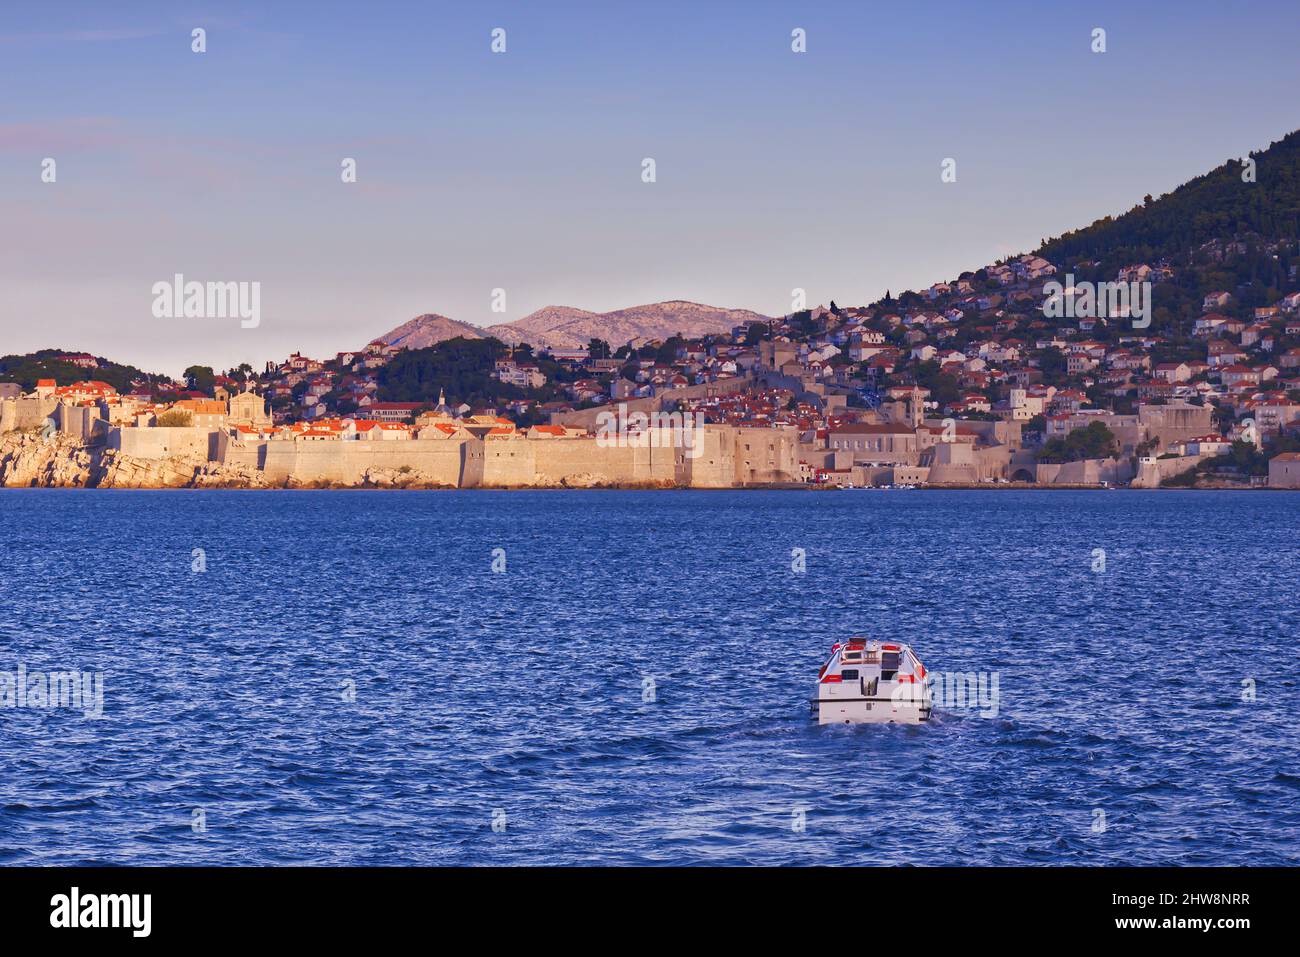 Dubrovnik, Croatie - arrivée par la mer - Un petit bateau approche la ville, avec les murs de la ville et les montagnes lointaines en vue Banque D'Images